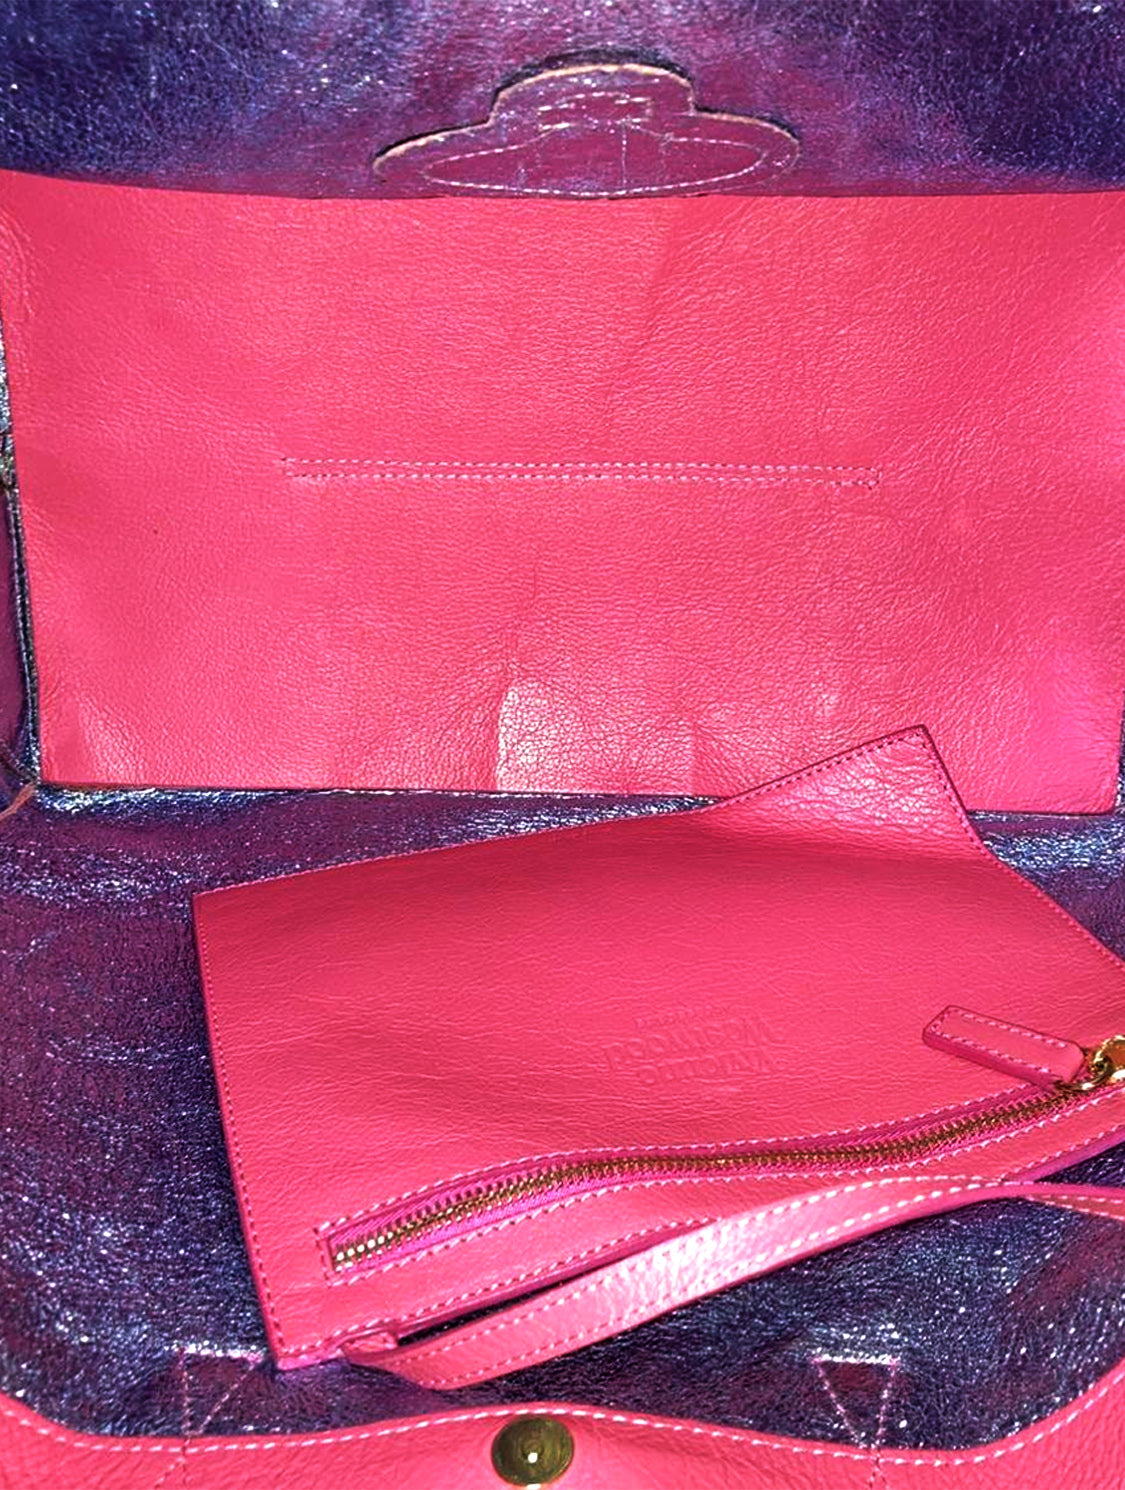 Vivienne Westwood Hot Pink Heart Bag - ShopperBoard